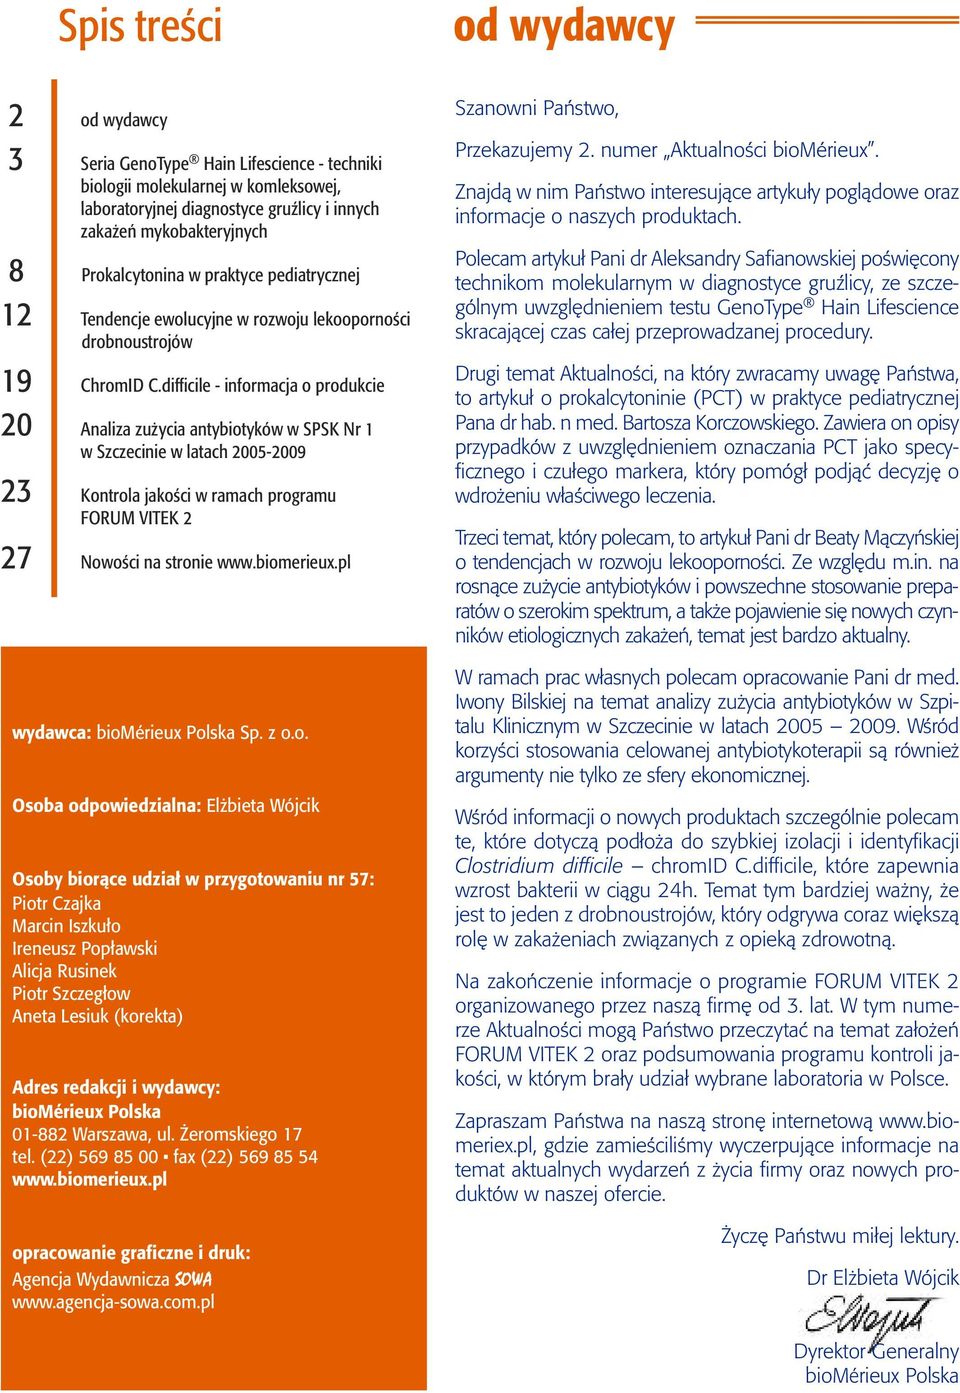 difficile - informacja o produkcie 20 Analiza zużycia antybiotyków w SPSK Nr 1 w Szczecinie w latach 2005-2009 23 Kontrola jakości w ramach programu FORUM VITEK 2 27 Nowości na stronie www.biomerieux.